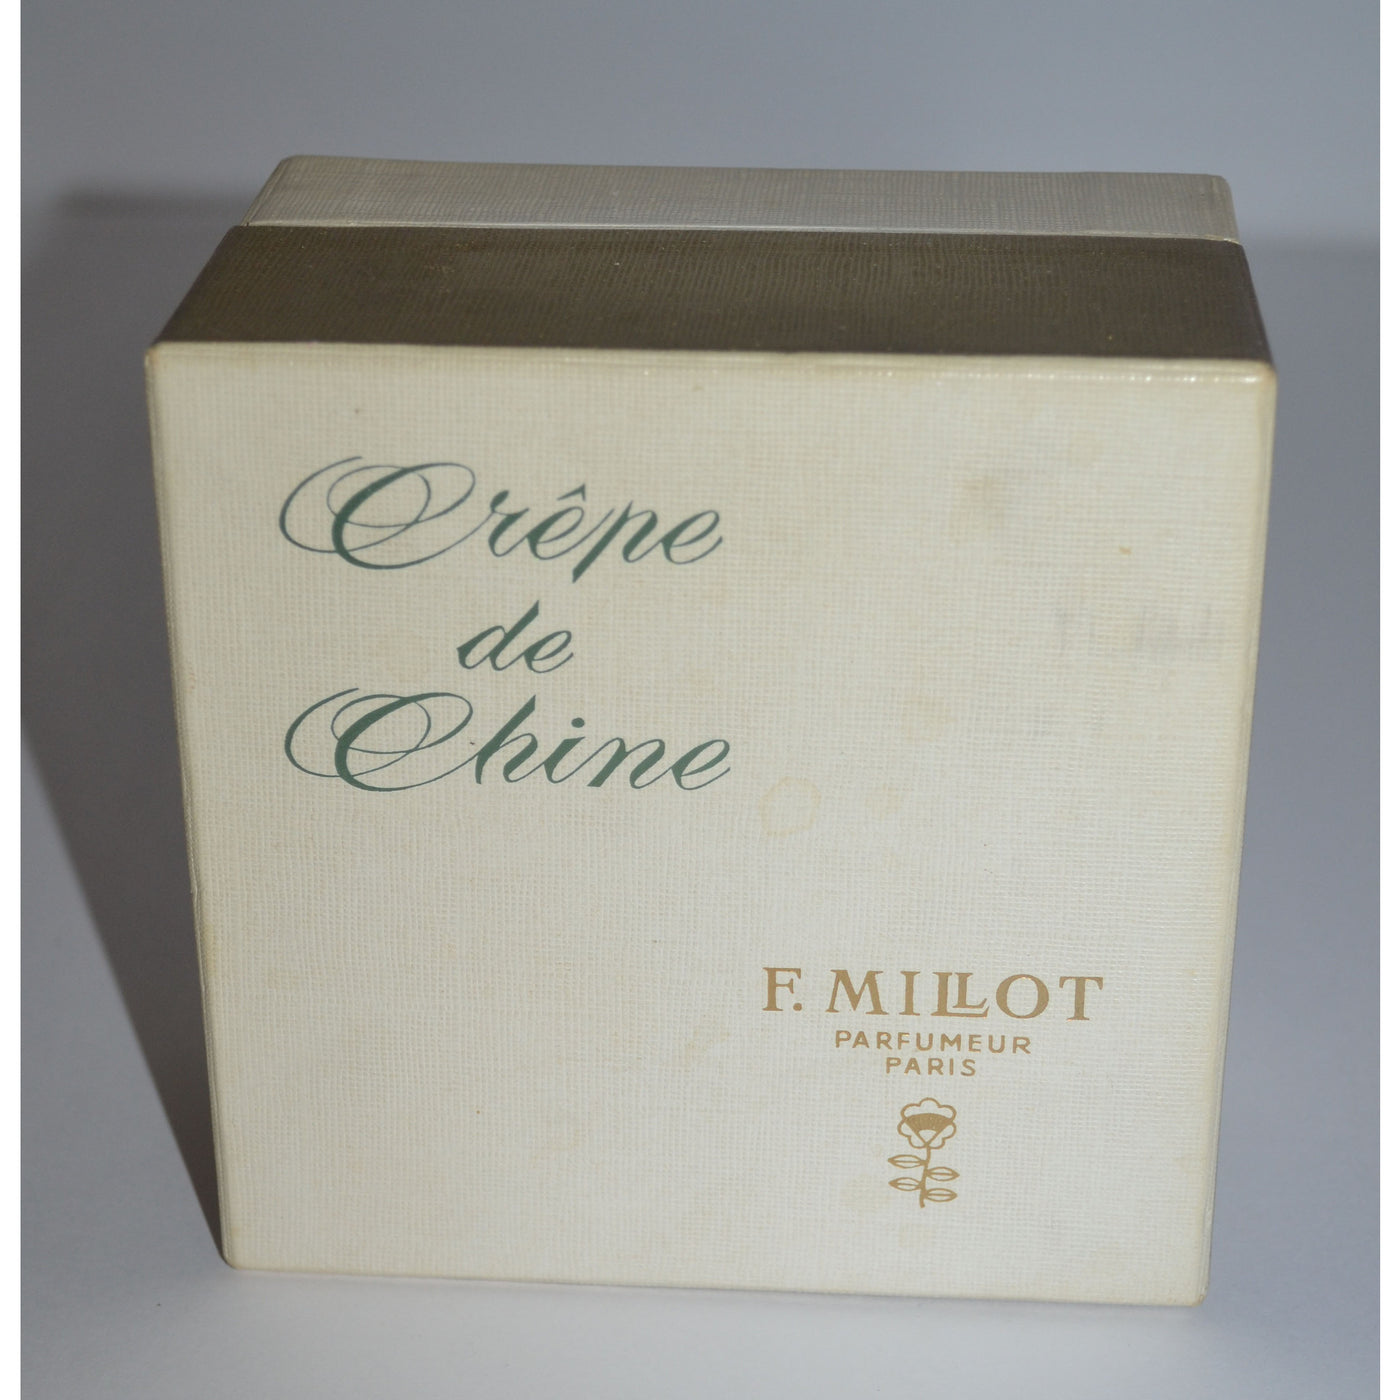 Vintage Crepe de Chine Perfume Bottle By F. Millot